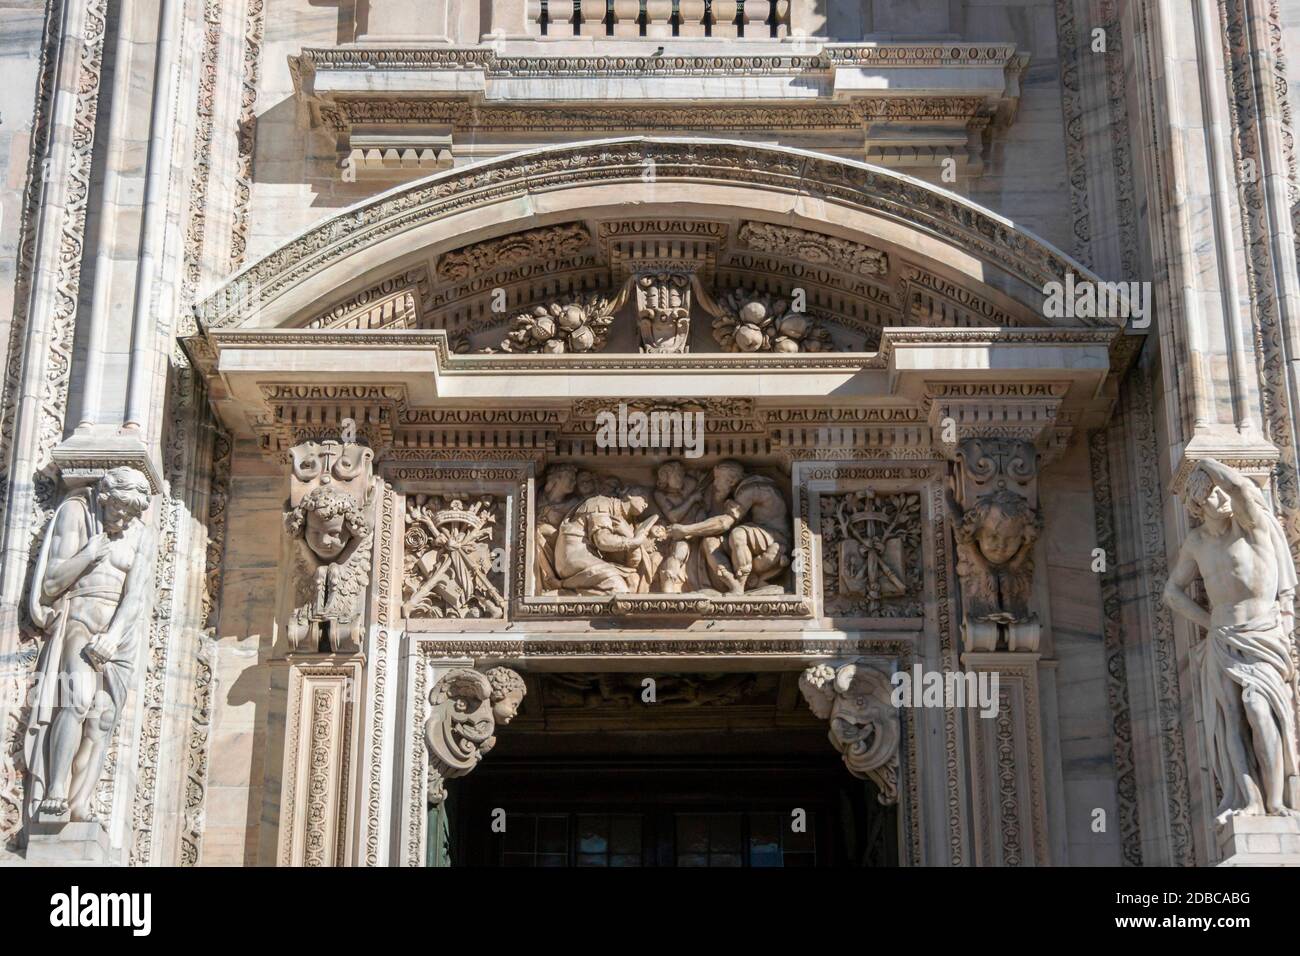 Dettaglio rilievo sulla facciata della cattedrale di Milano Foto Stock